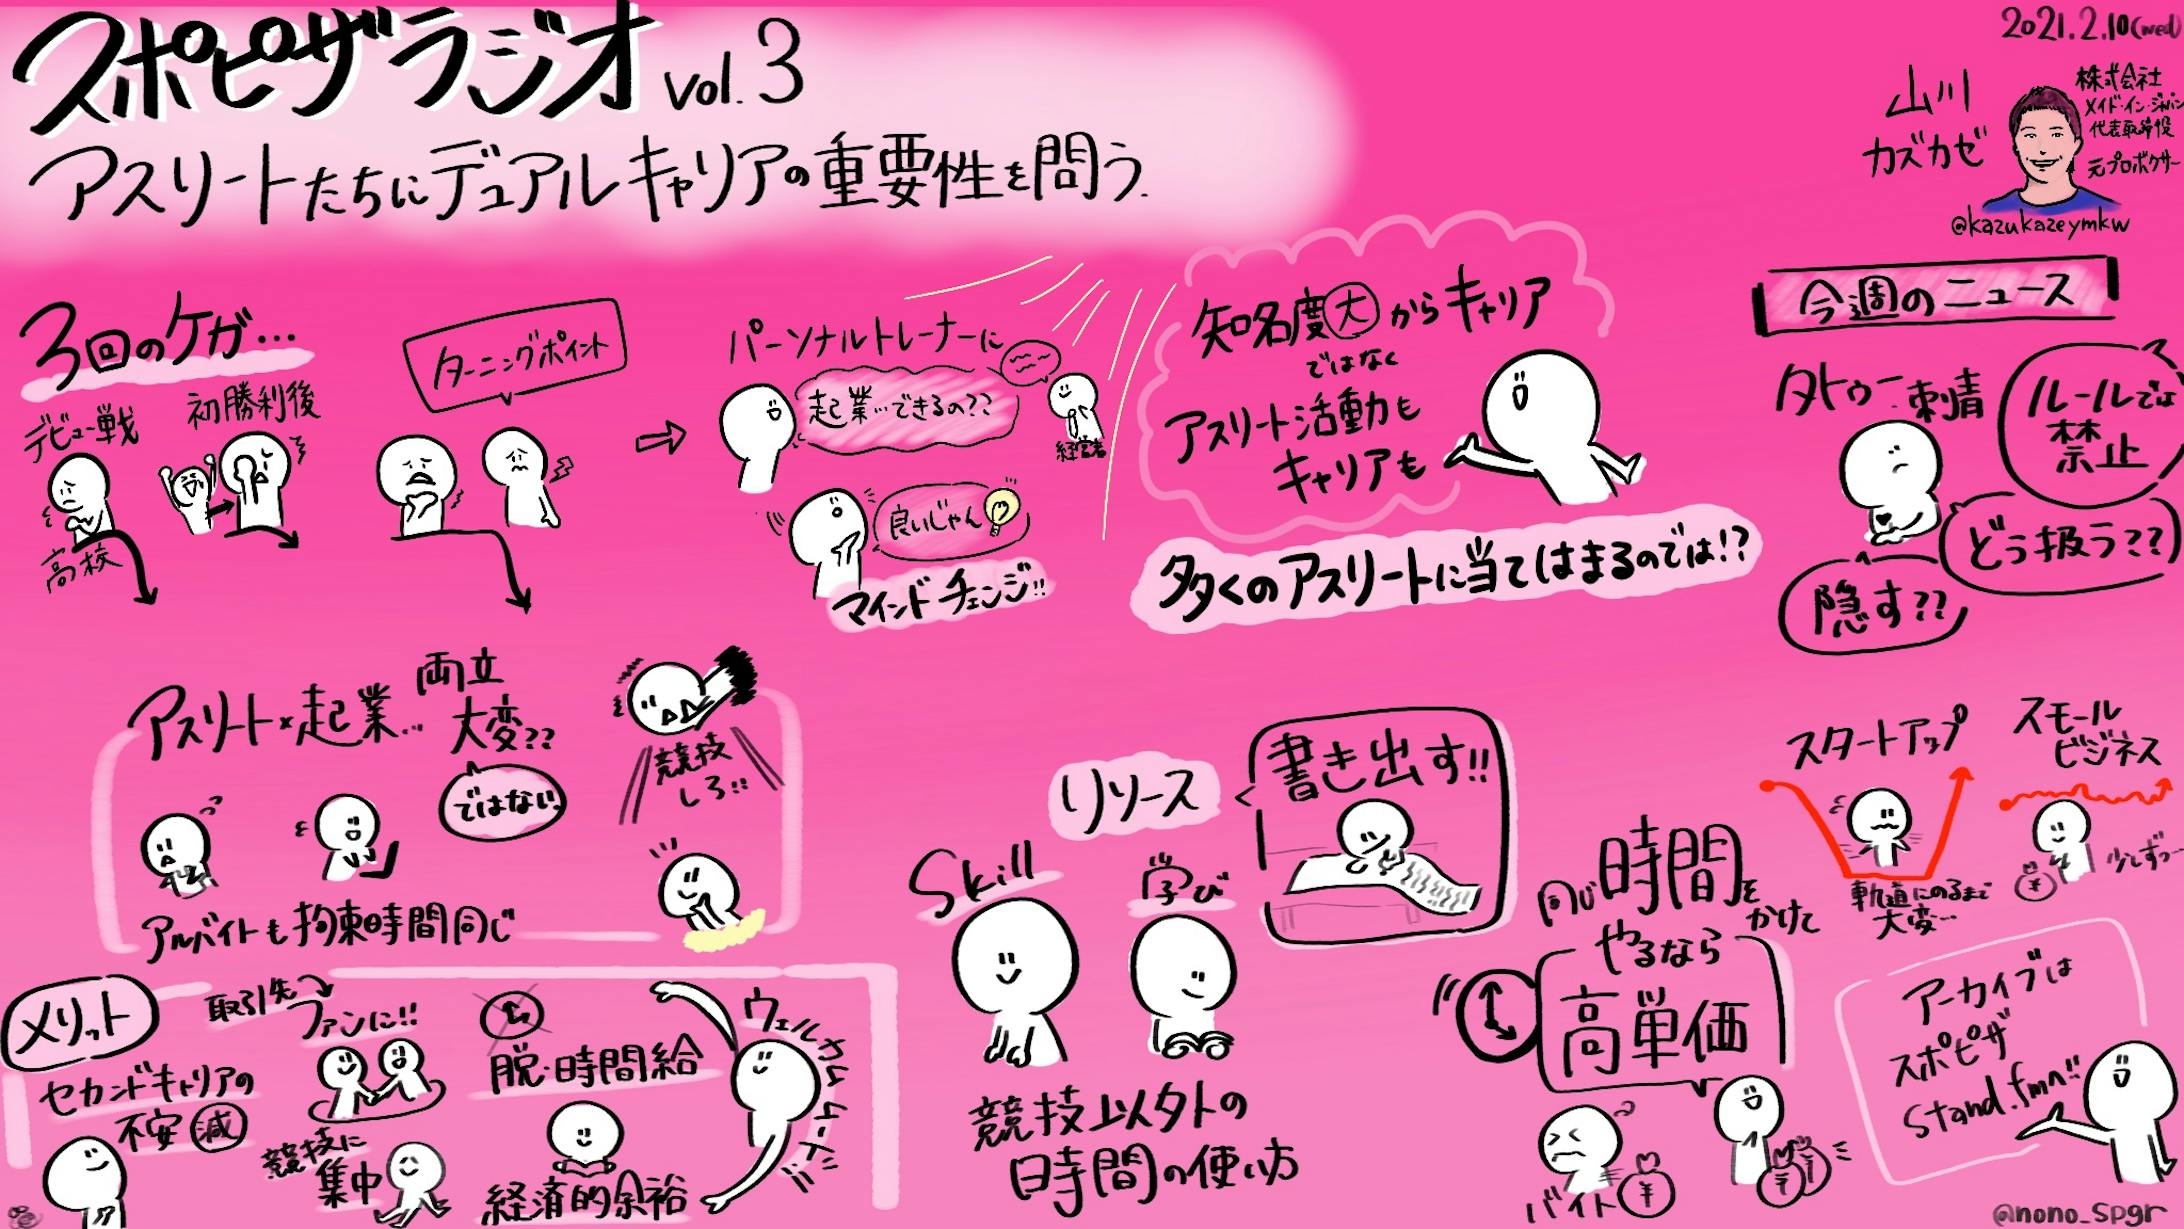 スポピザラジオ vol.3『アスリートたちにデュアルキャリアの重要性を問う』山川 カズカゼ氏-1